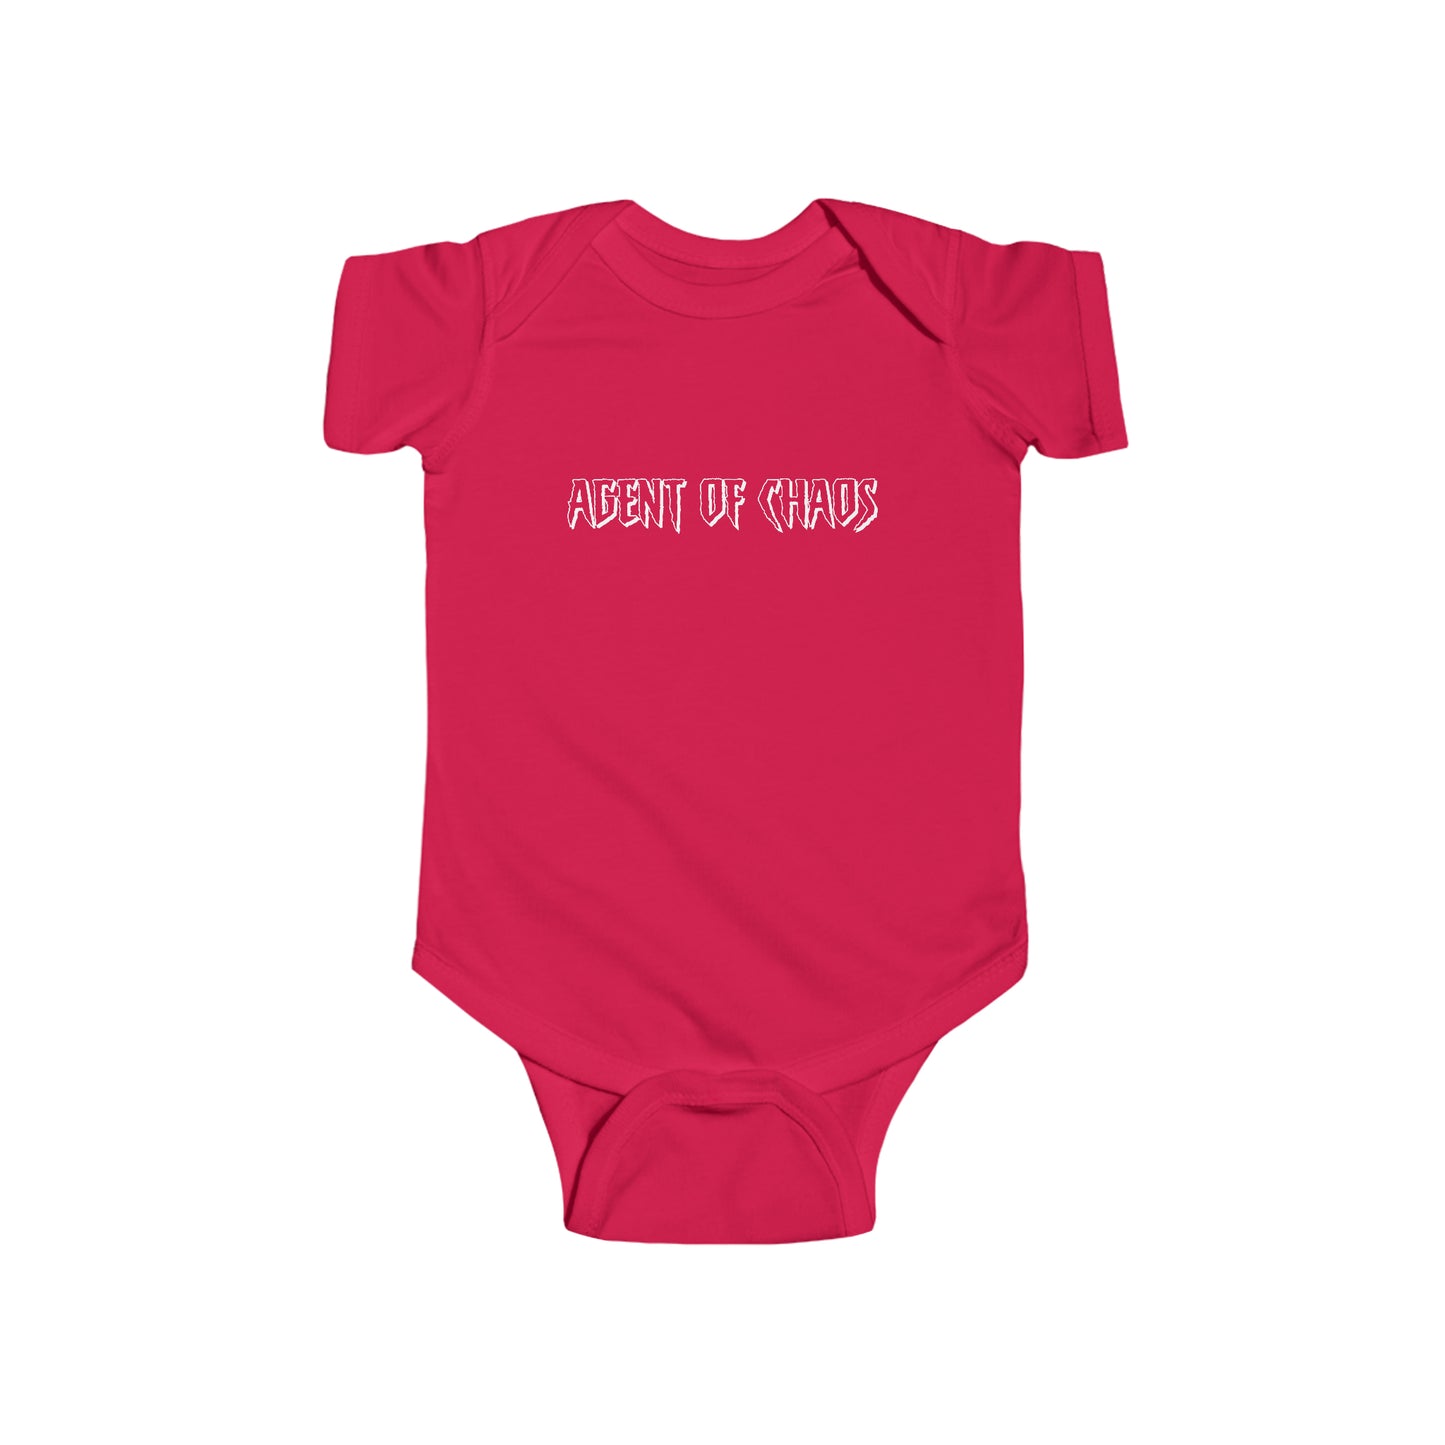 Agent of Chaos - wht - txt - Infant Fine Jersey Bodysuit